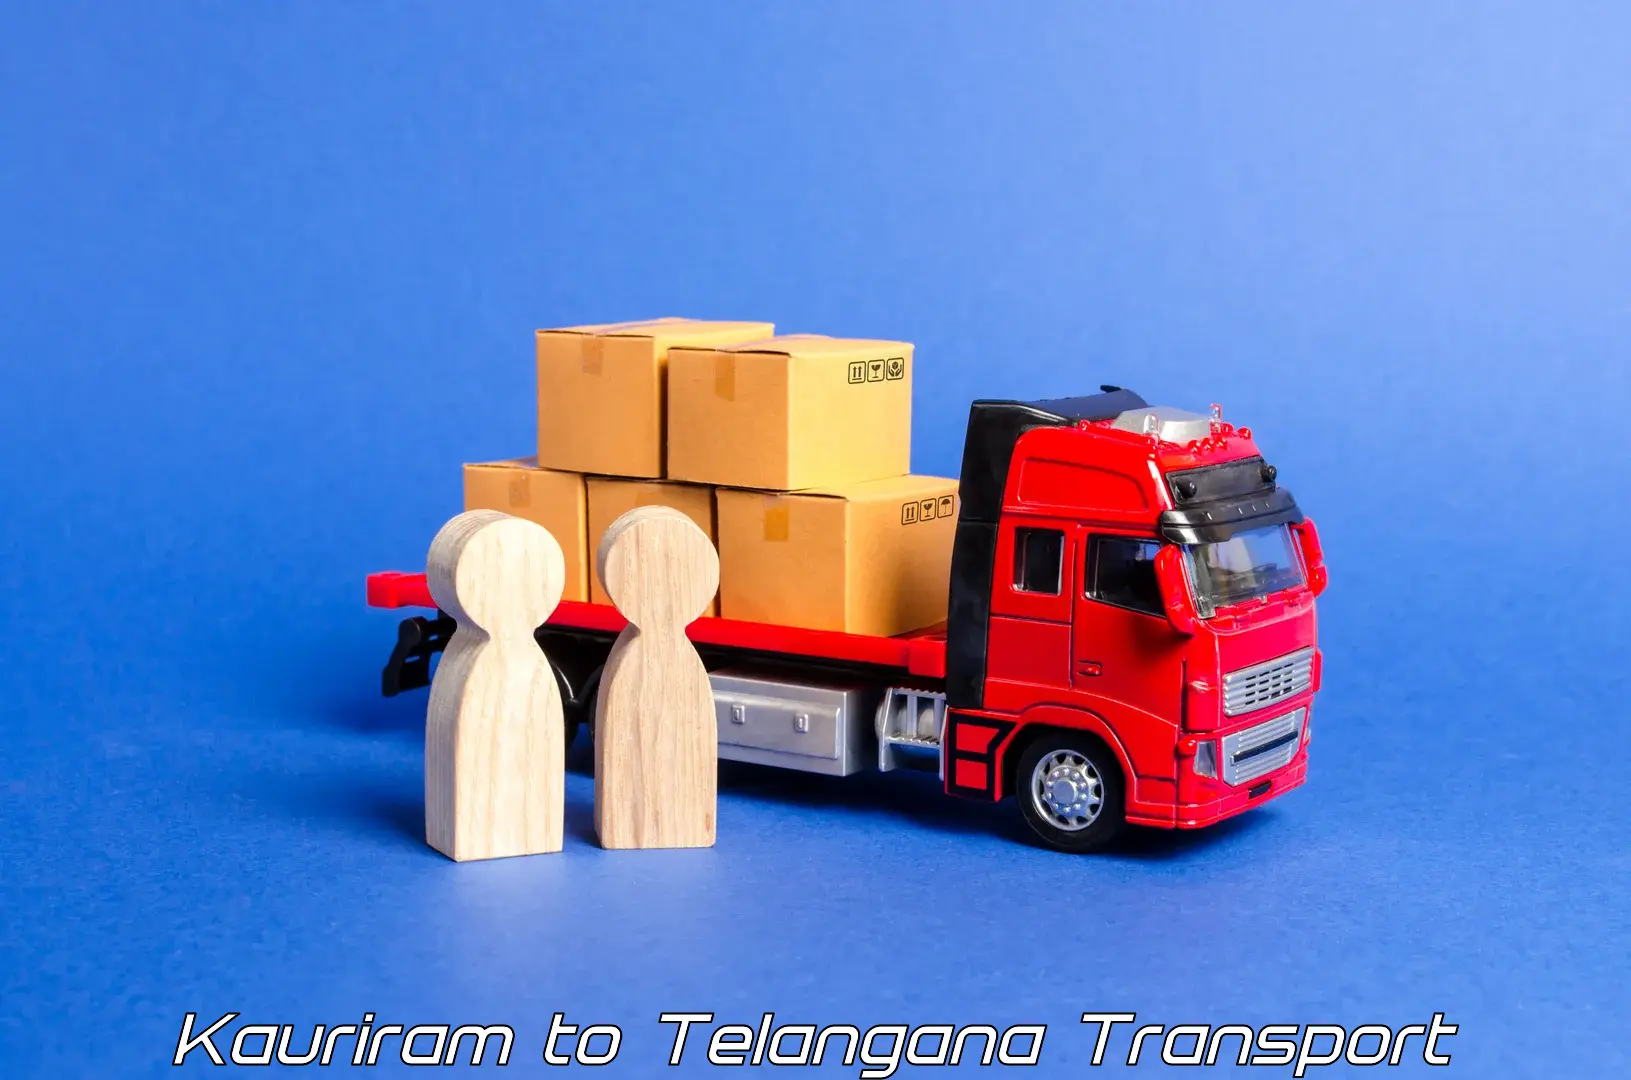 Vehicle transport services Kauriram to Telangana